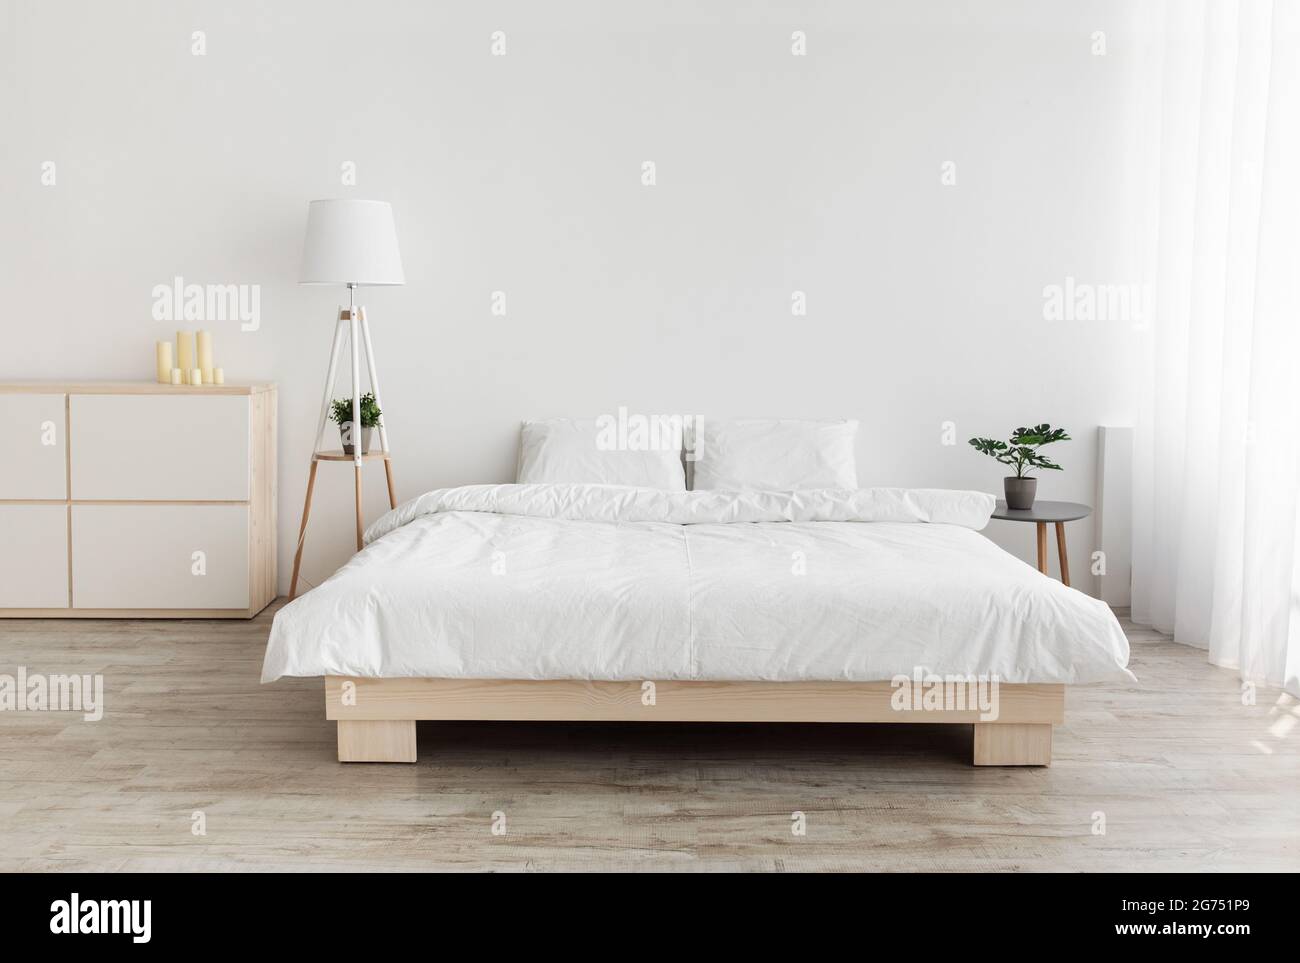 Echtes Foto des Schlafzimmers im einfachen Stil. Großes Bett mit Kissen, Lampe und Möbeln, weiße Wand, leerer Raum Stockfoto